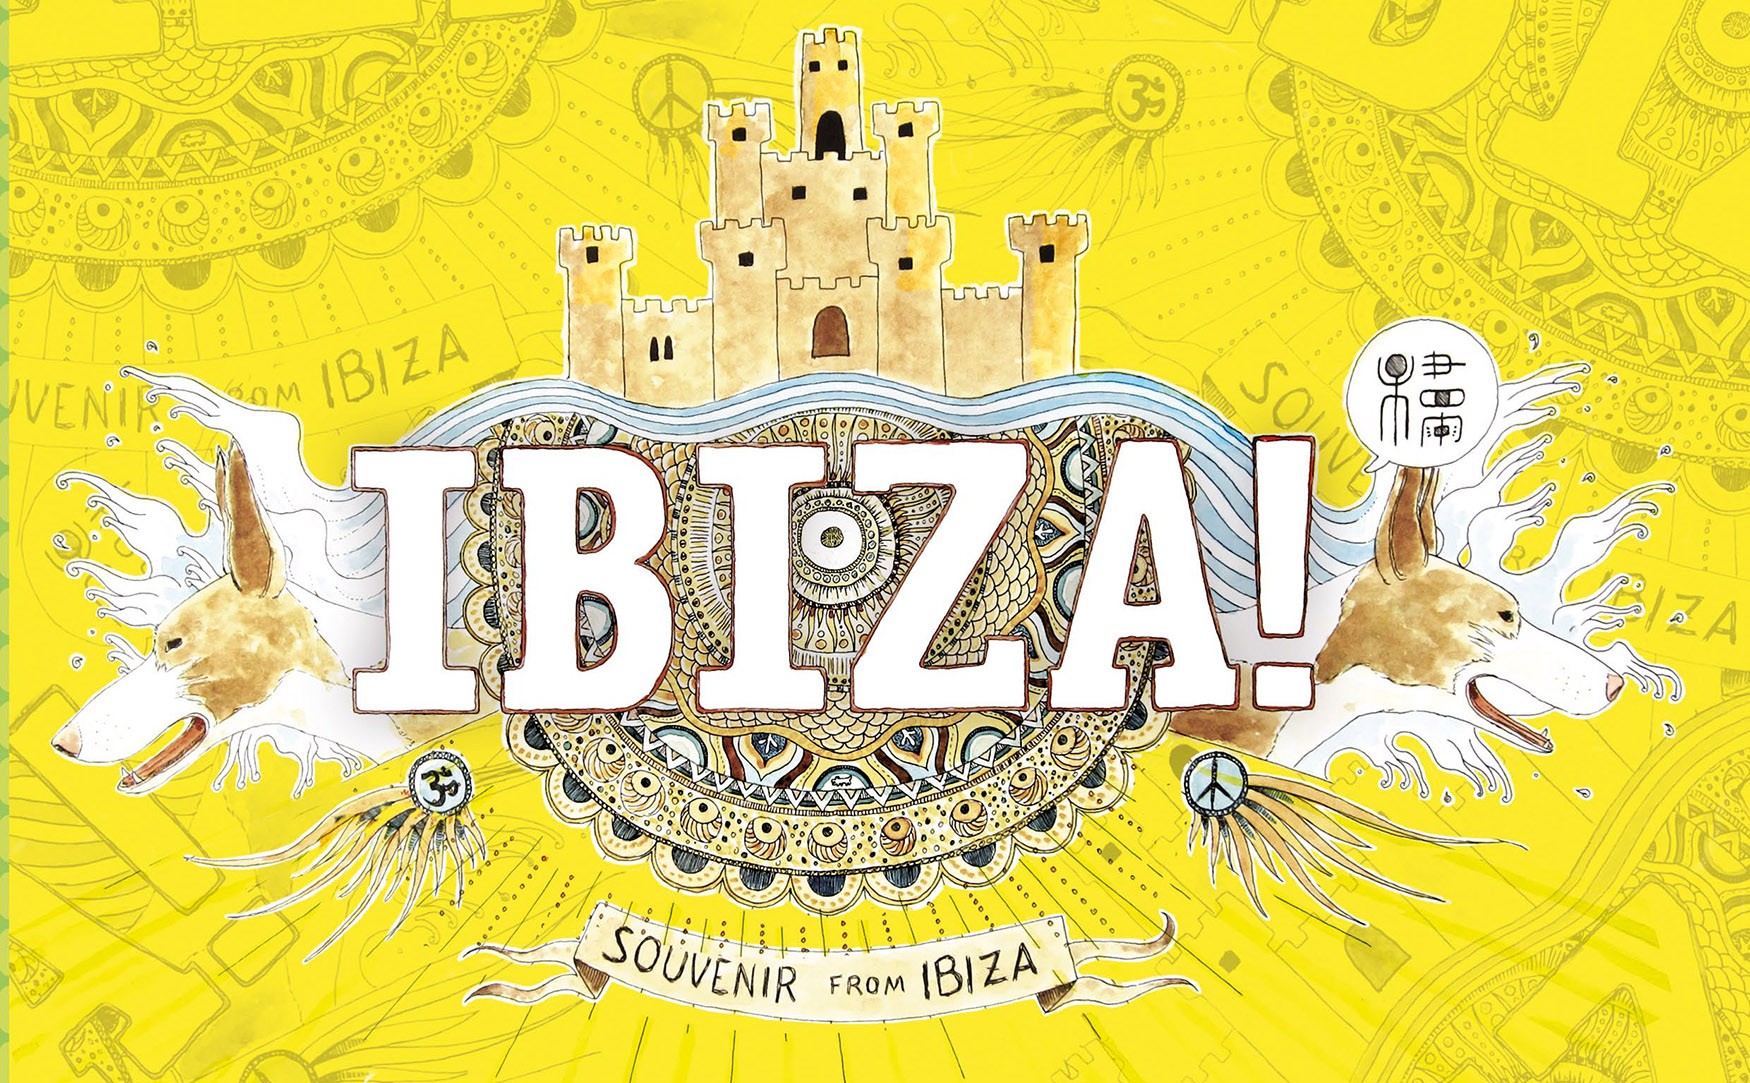 Fotografía de la portada de la guía ilustrada de Ibiza